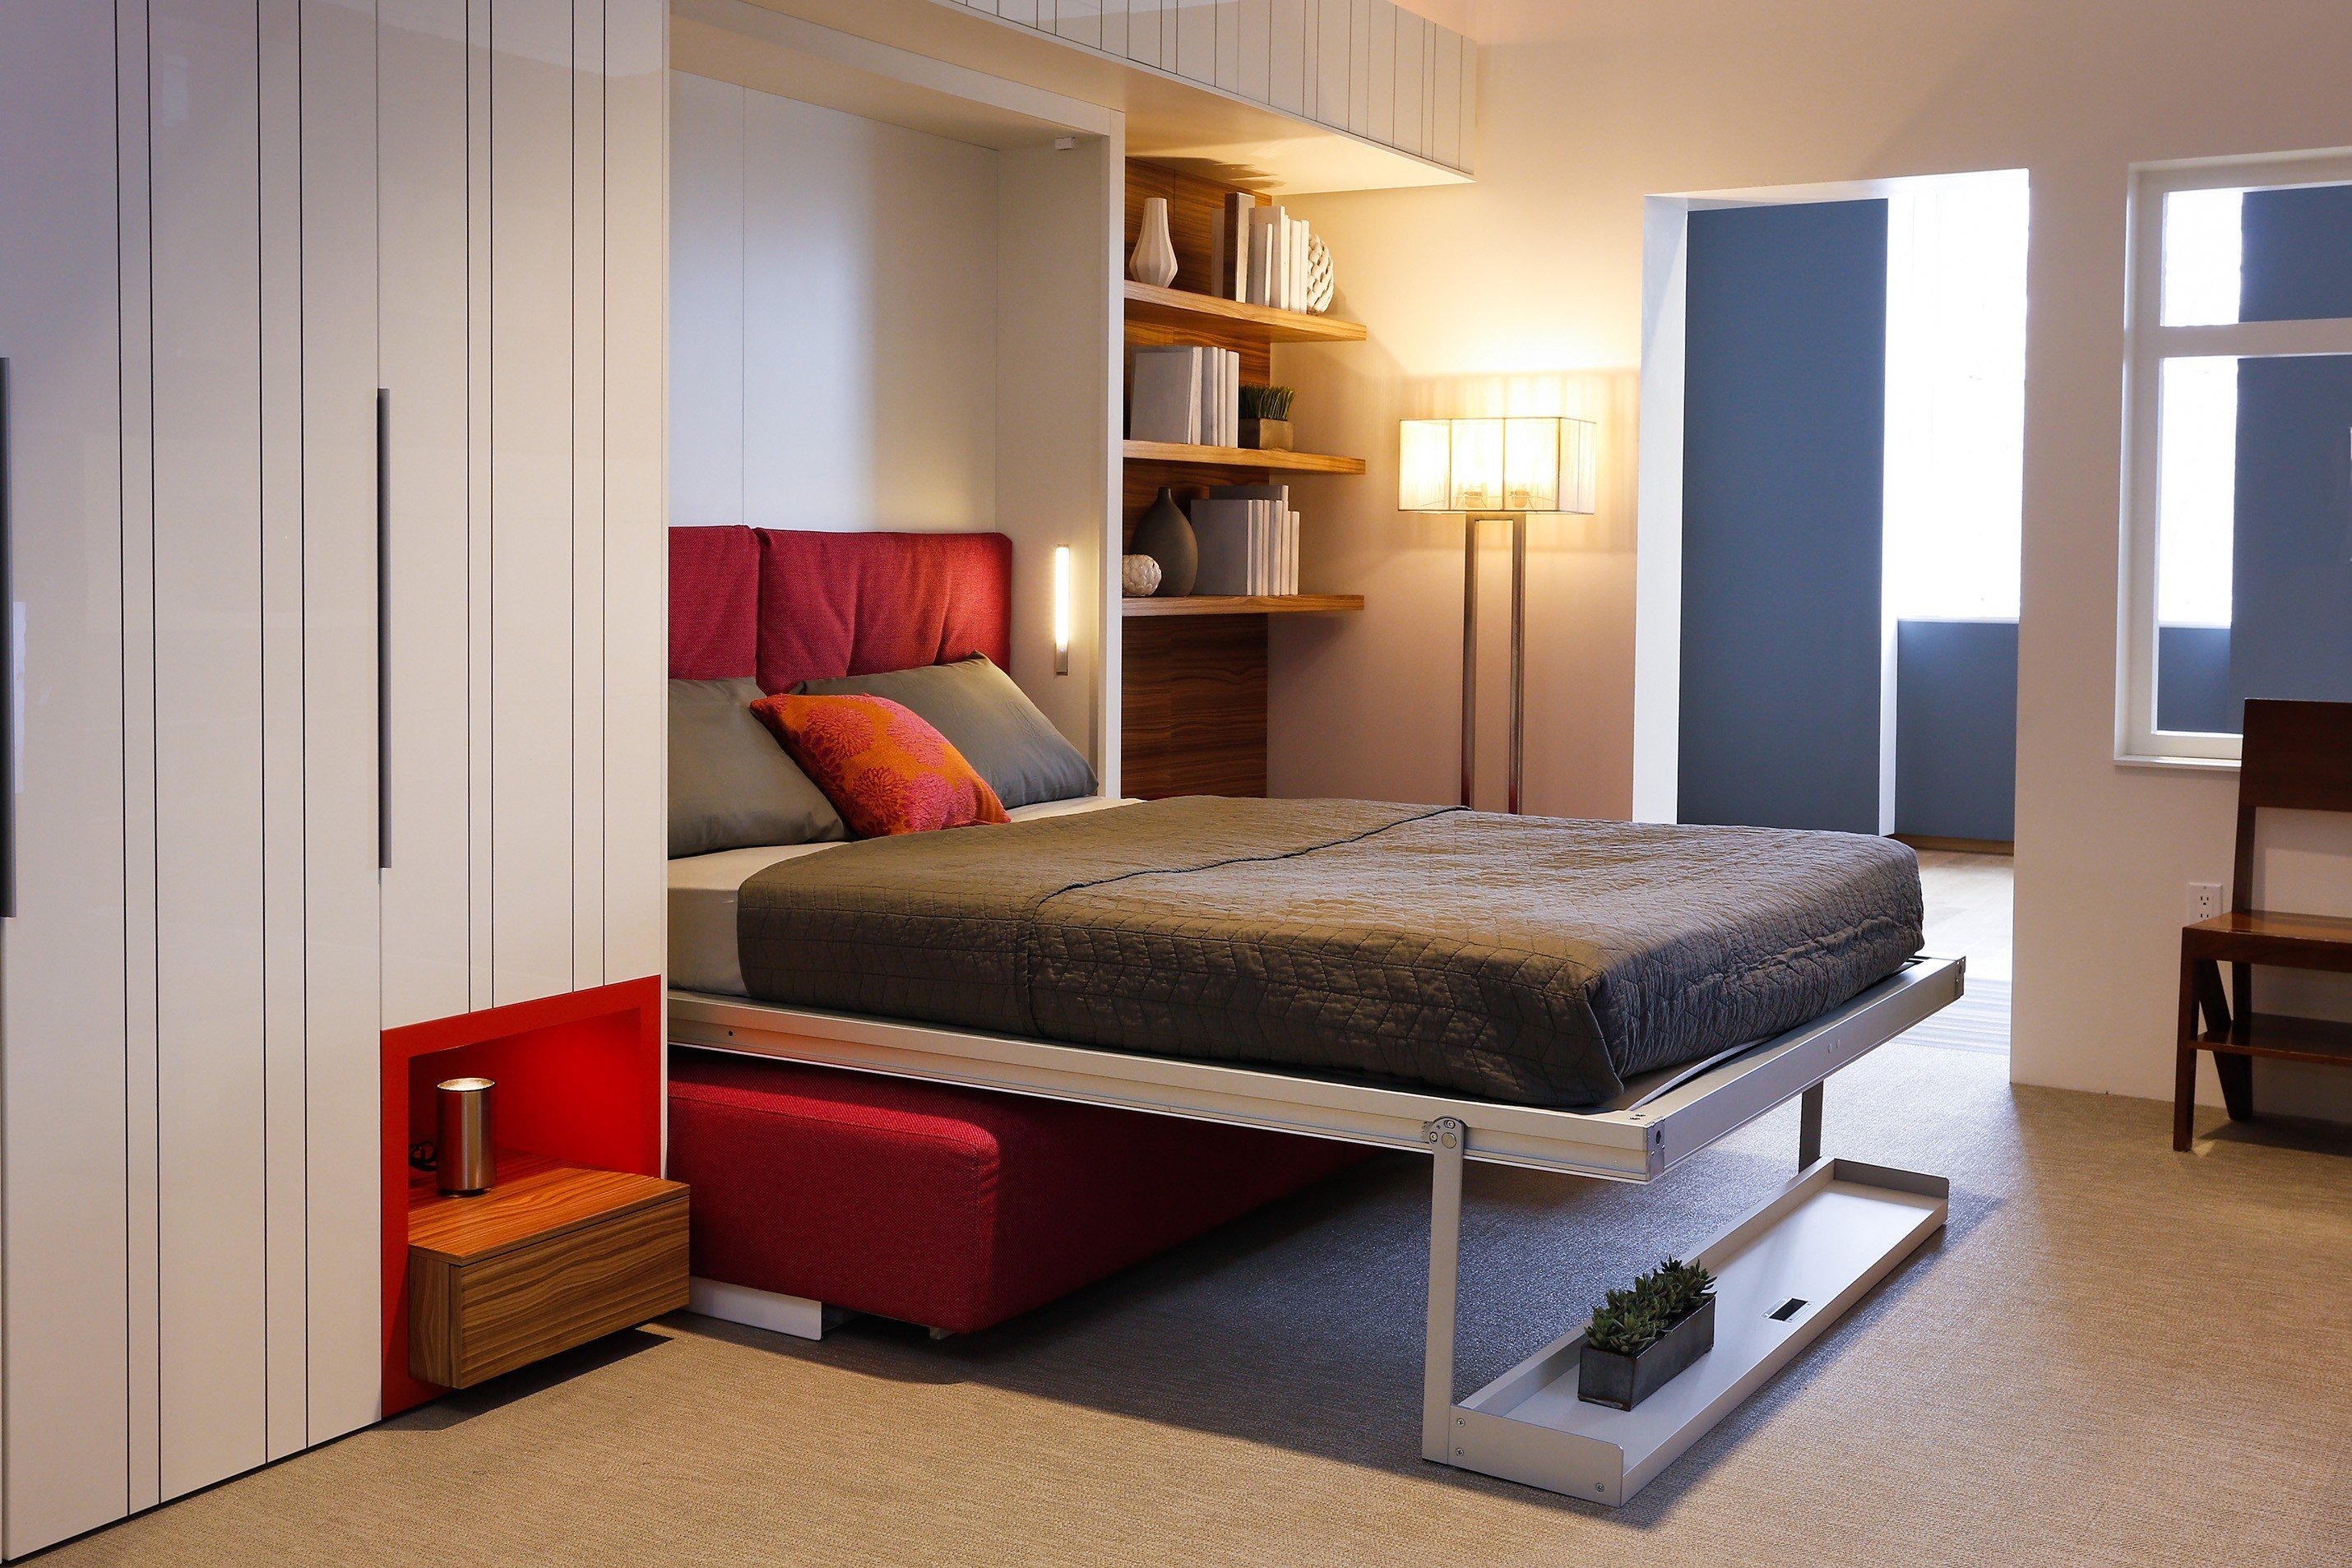 Идеи зонирования пространства комнаты на спальню и гостиную с фото, примерами и советами